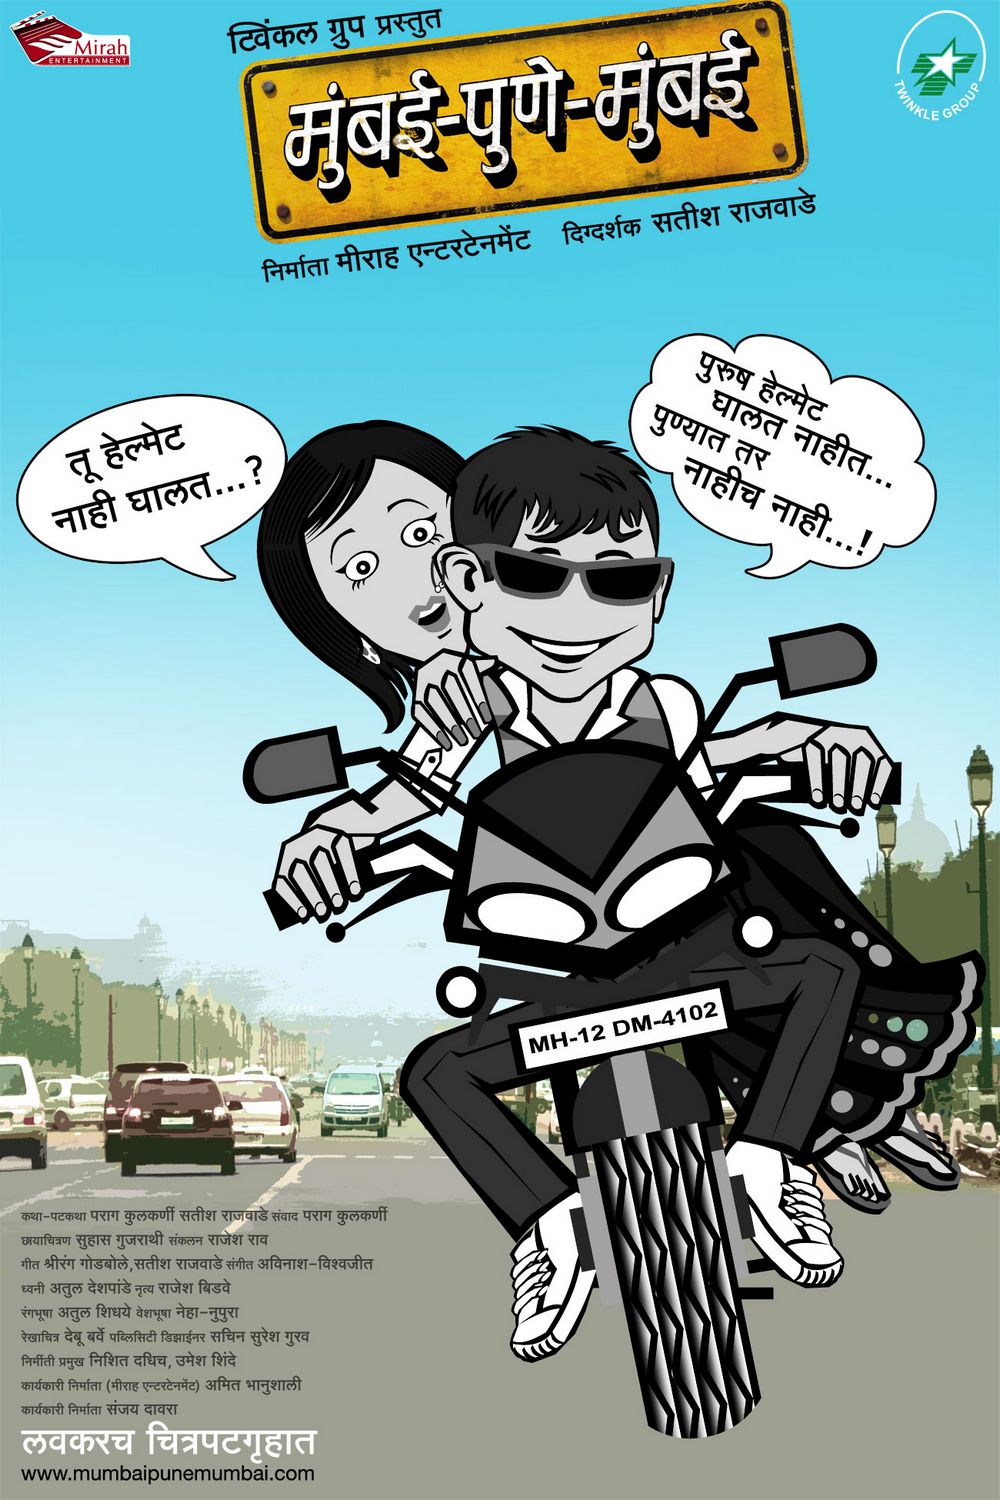 Extra Large Movie Poster Image for Mumbai-Pune-Mumbai (#11 of 12)